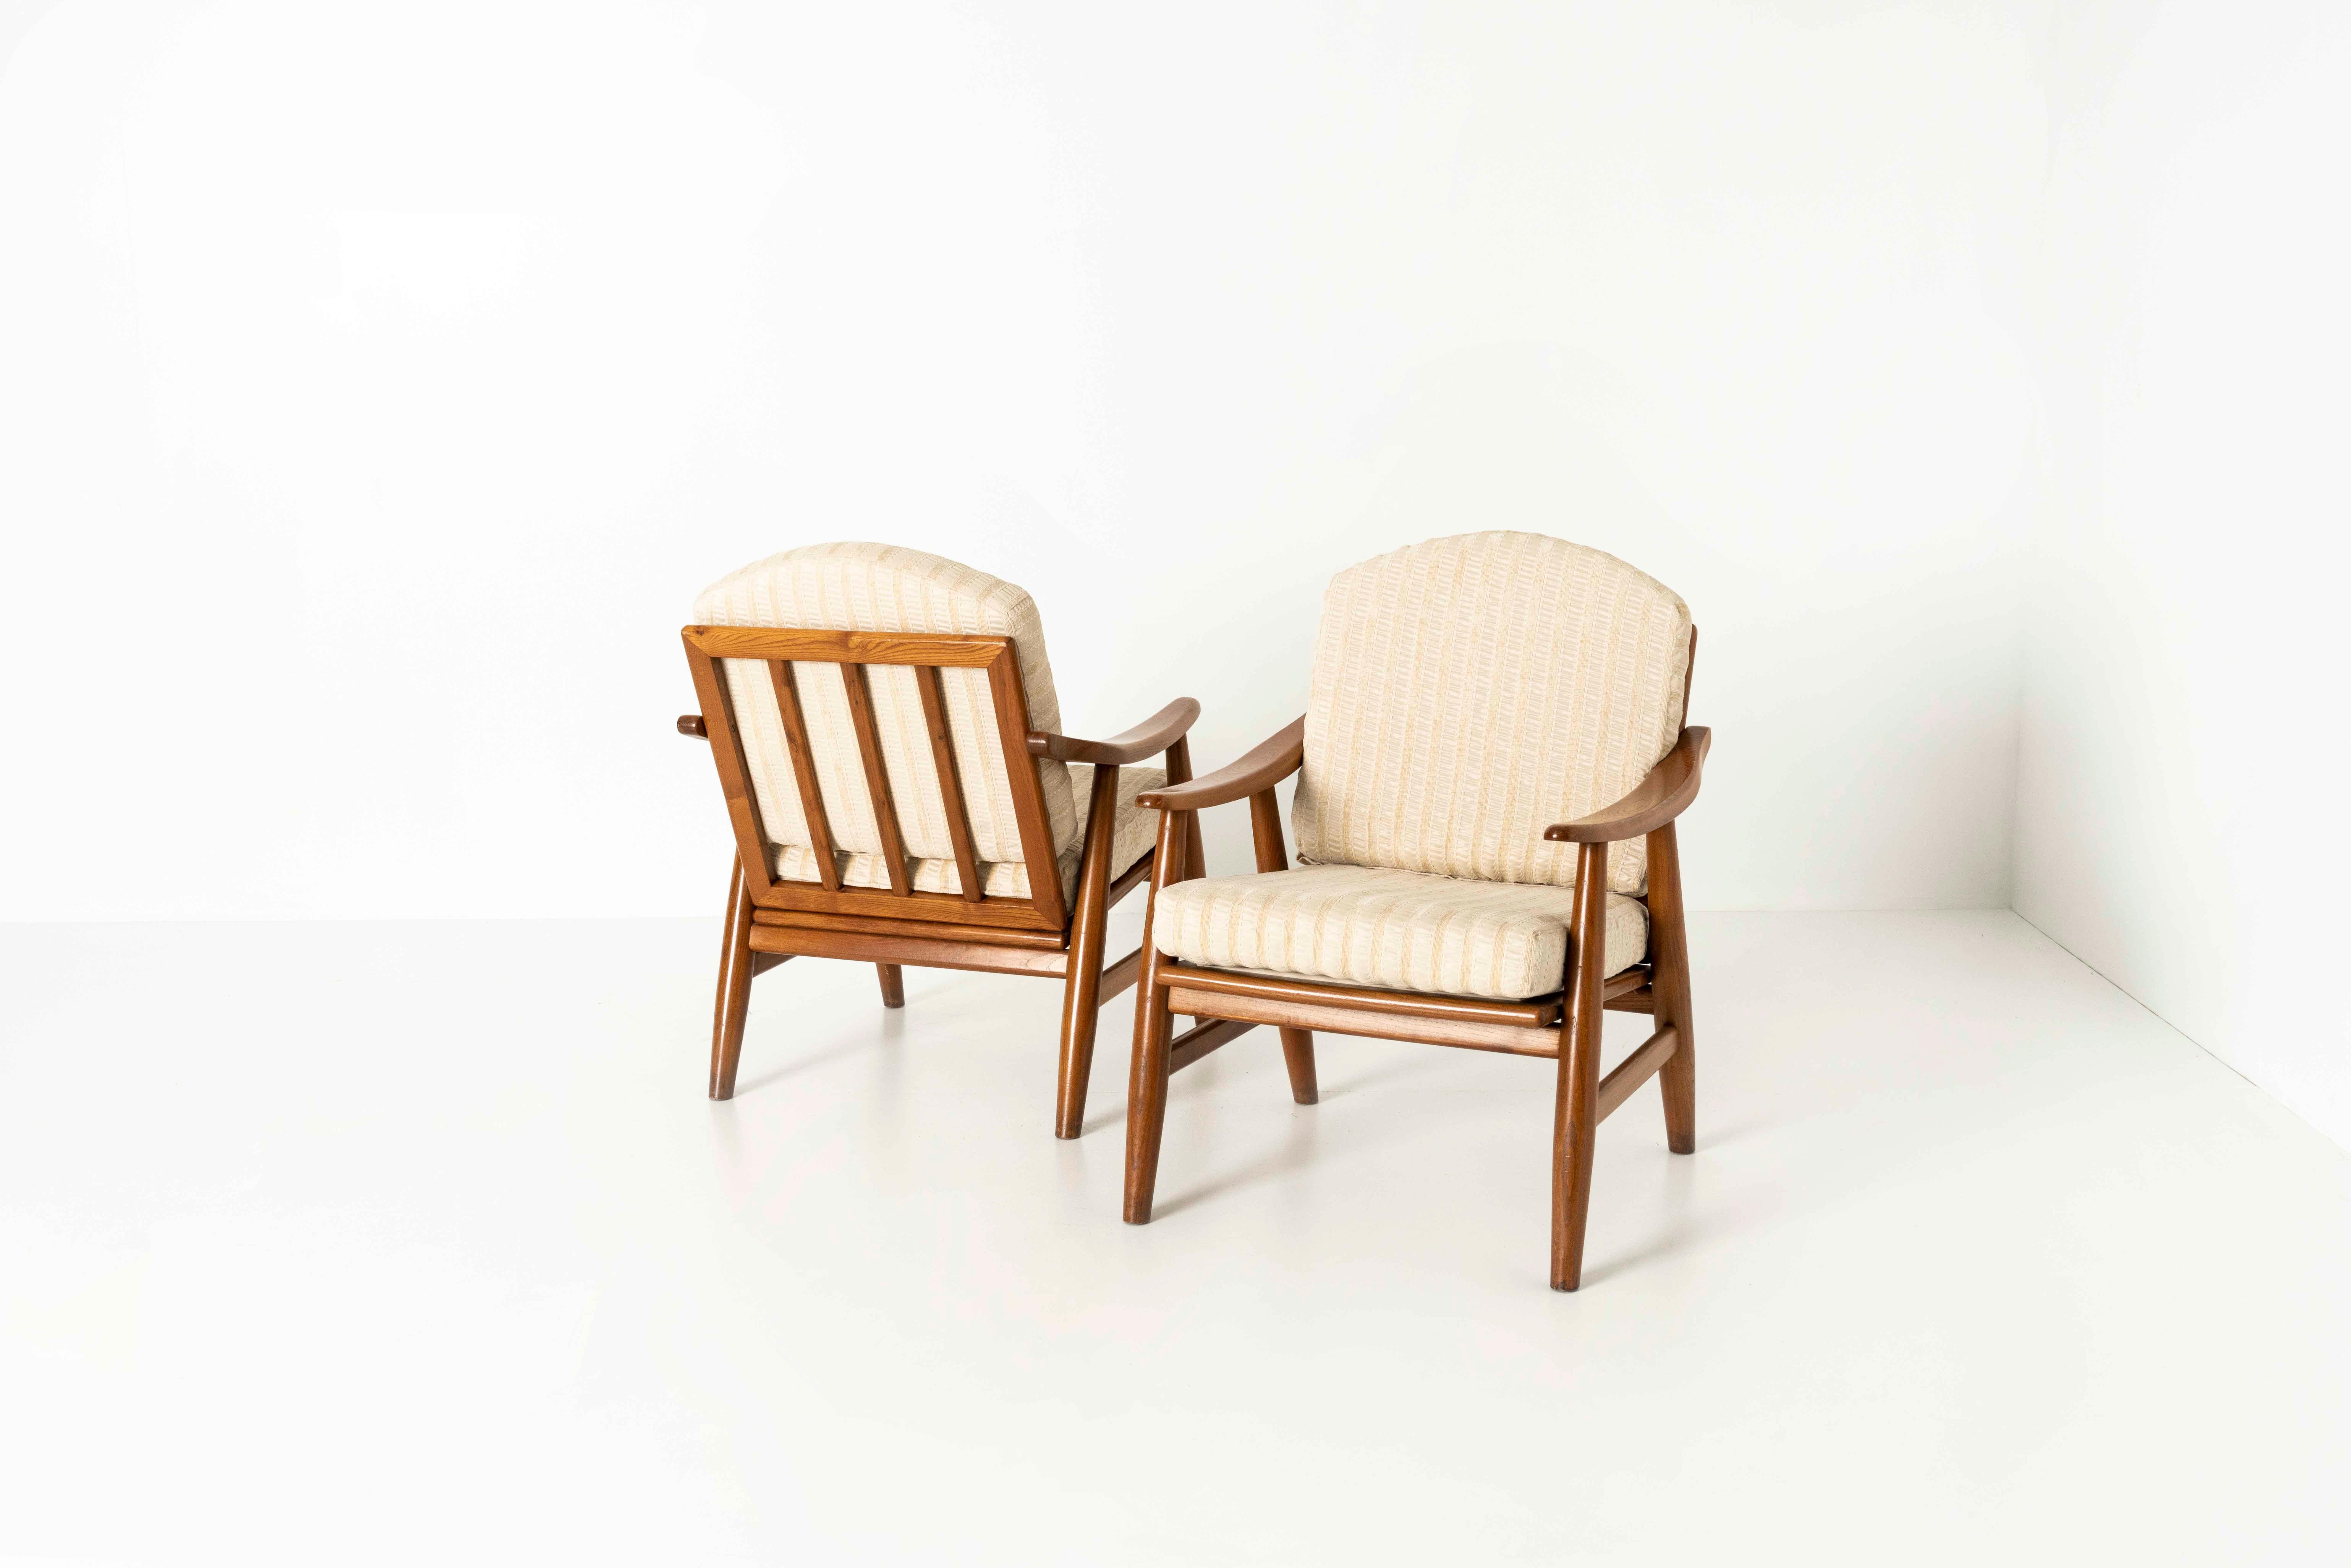 Ensemble de quatre chaises longues italiennes vintage des années 1970. Ces chaises ont un design simple mais élégant et deux coussins en tissu brillant blanc cassé. Les pieds sont en forme de cône et le dossier est recourbé vers l'arrière, ce qui